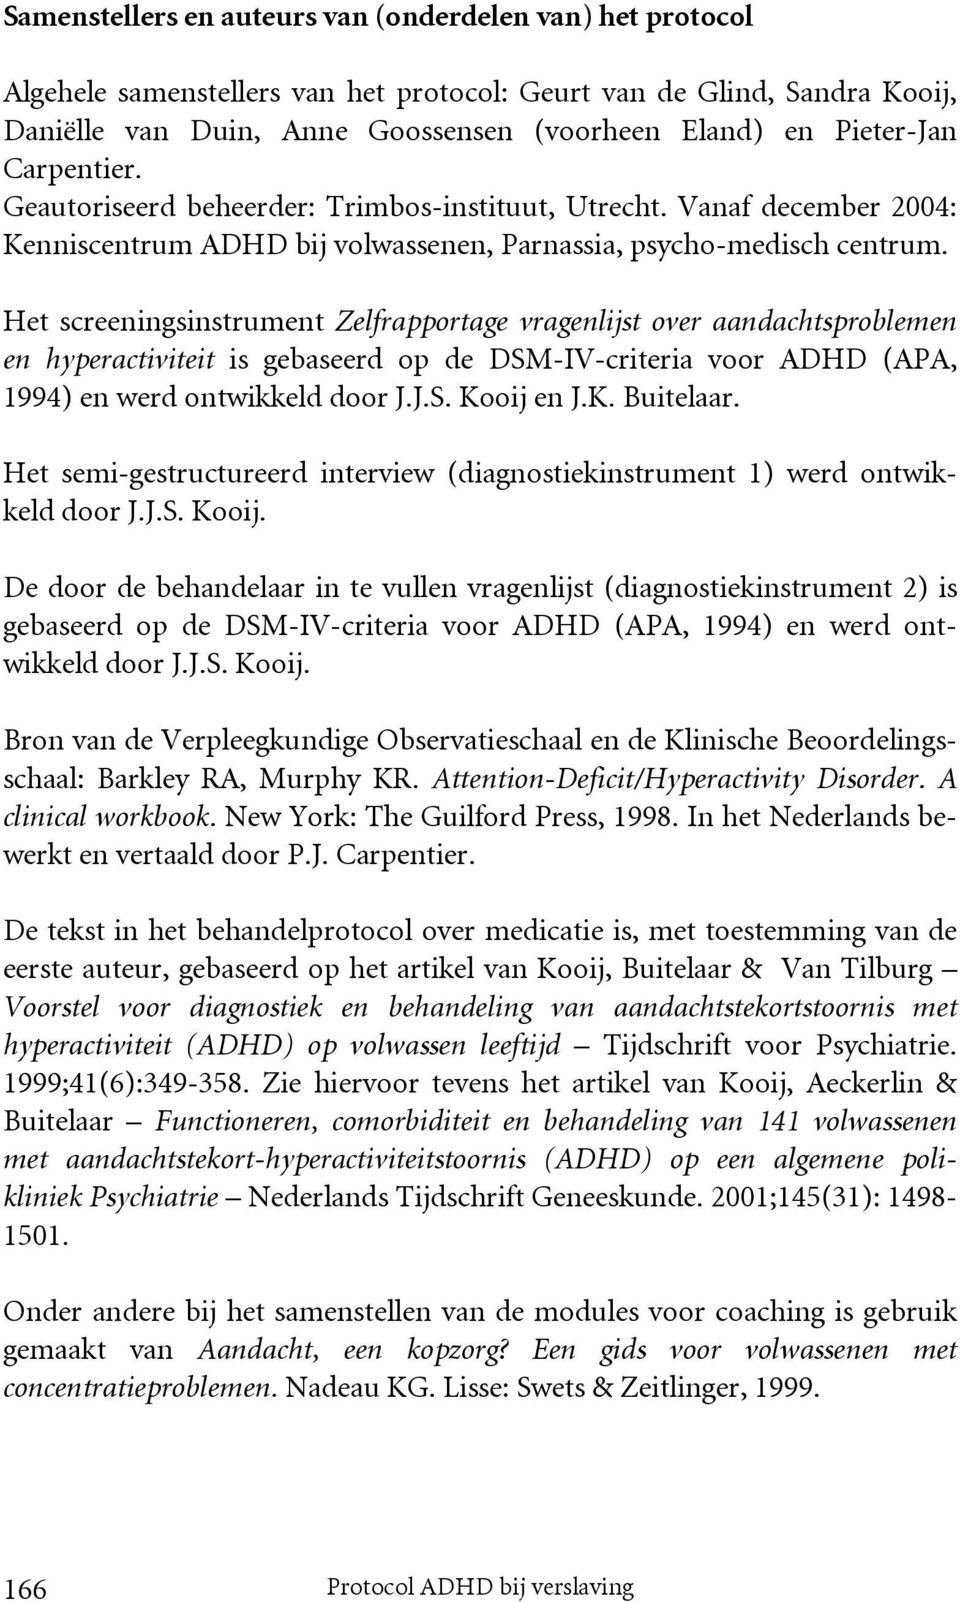 Het screeningsinstrument Zelfrapportage vragenlijst over aandachtsproblemen en hyperactiviteit is gebaseerd op de DSM-IV-criteria voor ADHD (APA, 1994) en werd ontwikkeld door J.J.S. Kooij en J.K. Buitelaar.